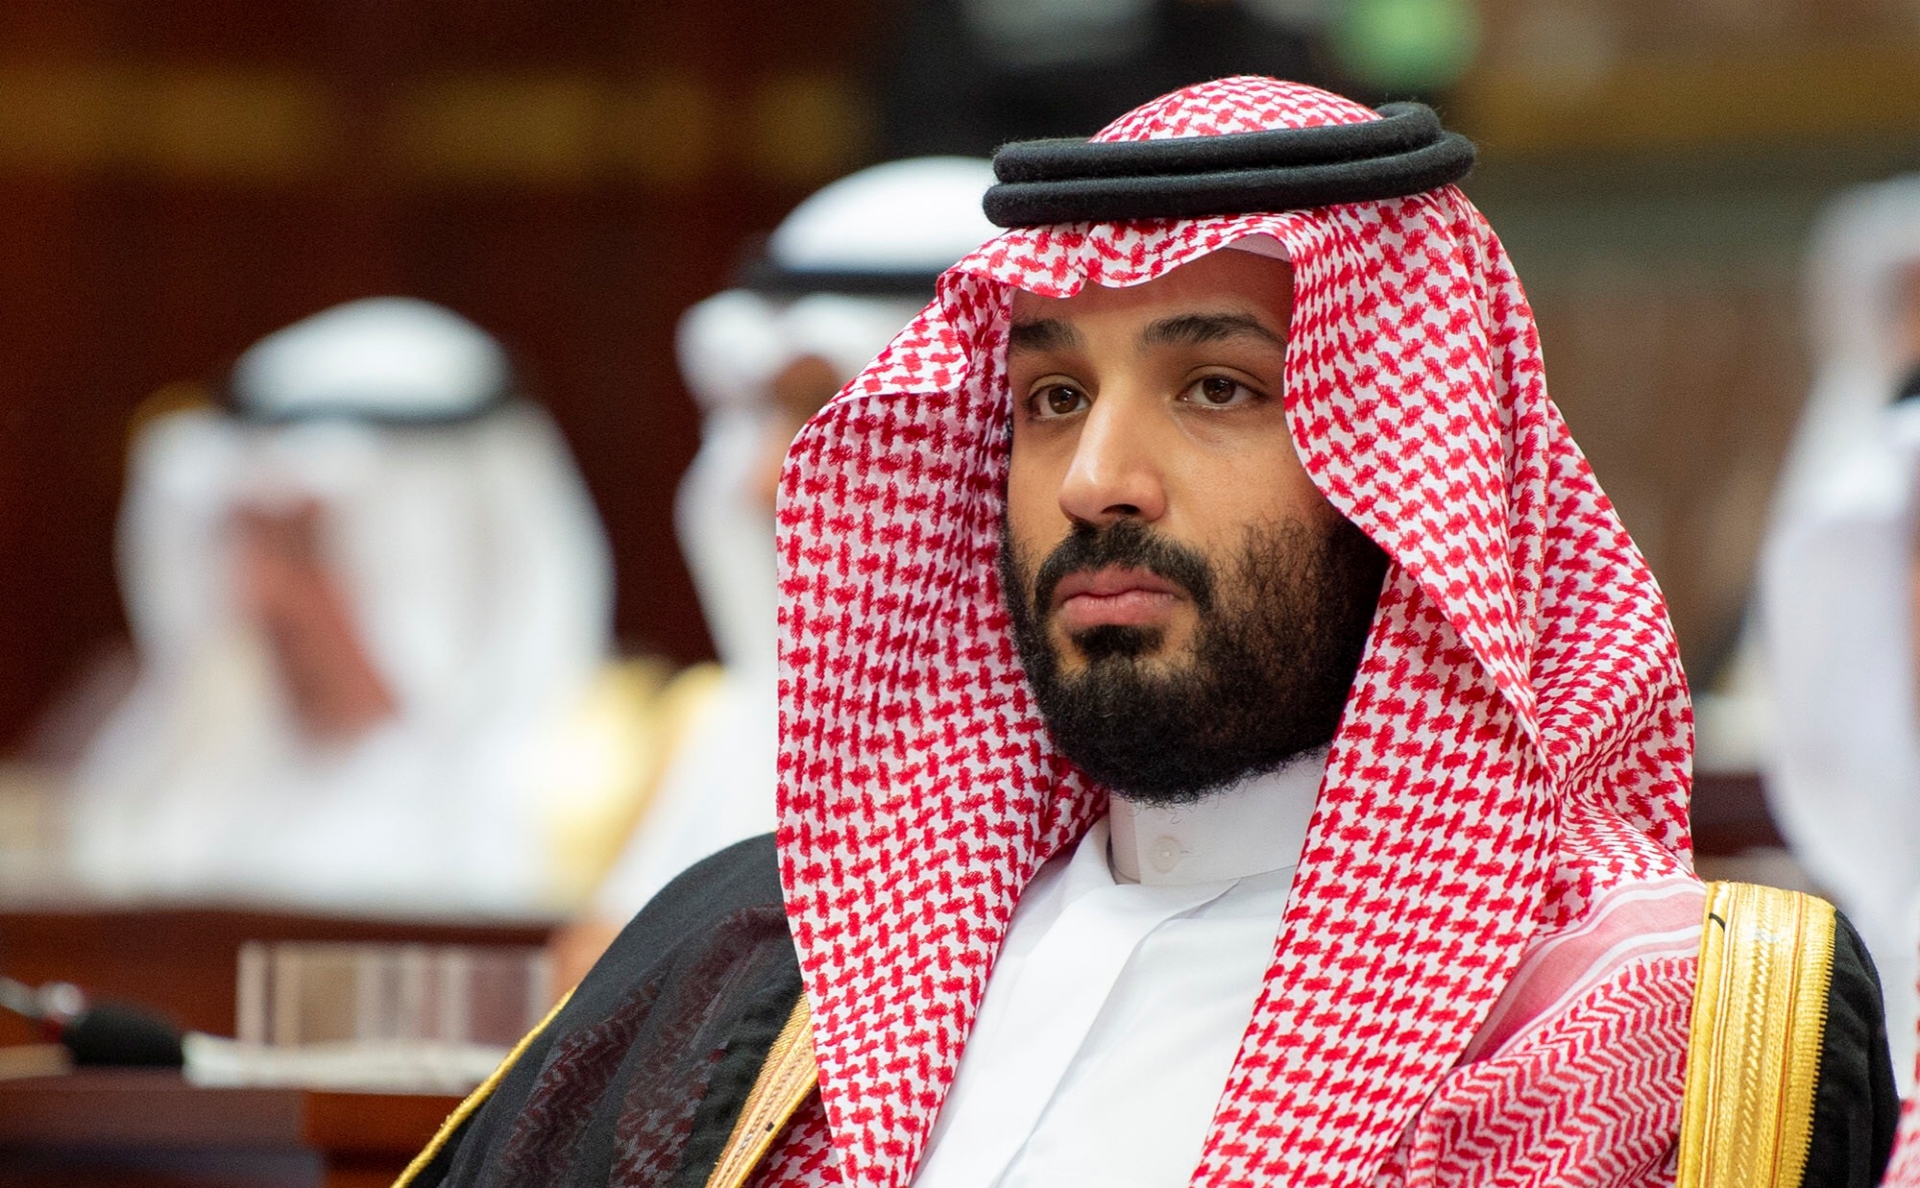 ОПЕК+ должна быть наготове для возможных дополнительных действий – министр энергетики Саудовской Аравии